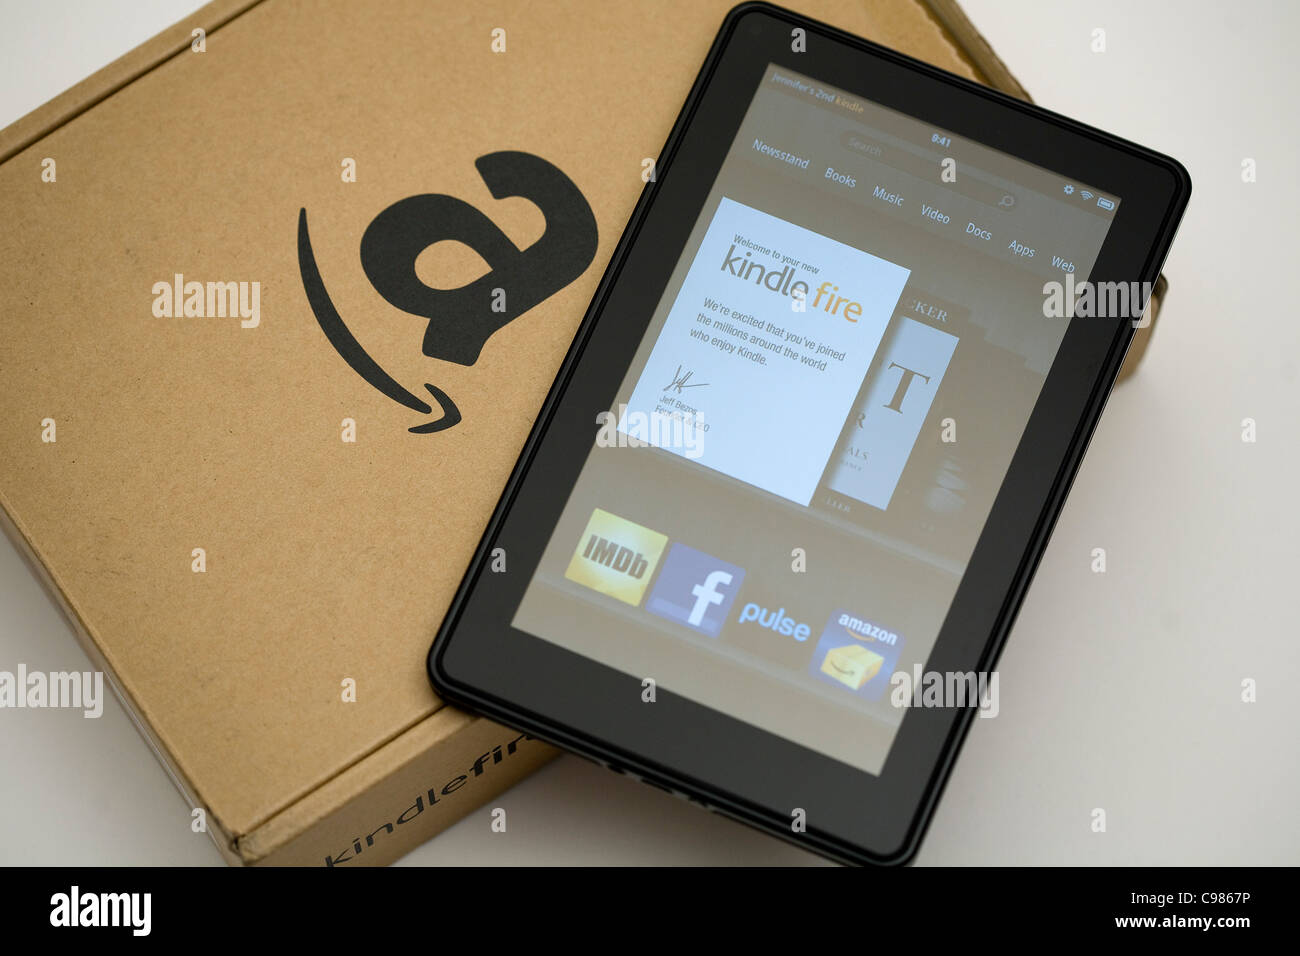 La Amazon.com Kindle Fire tablet PC. Foto de stock